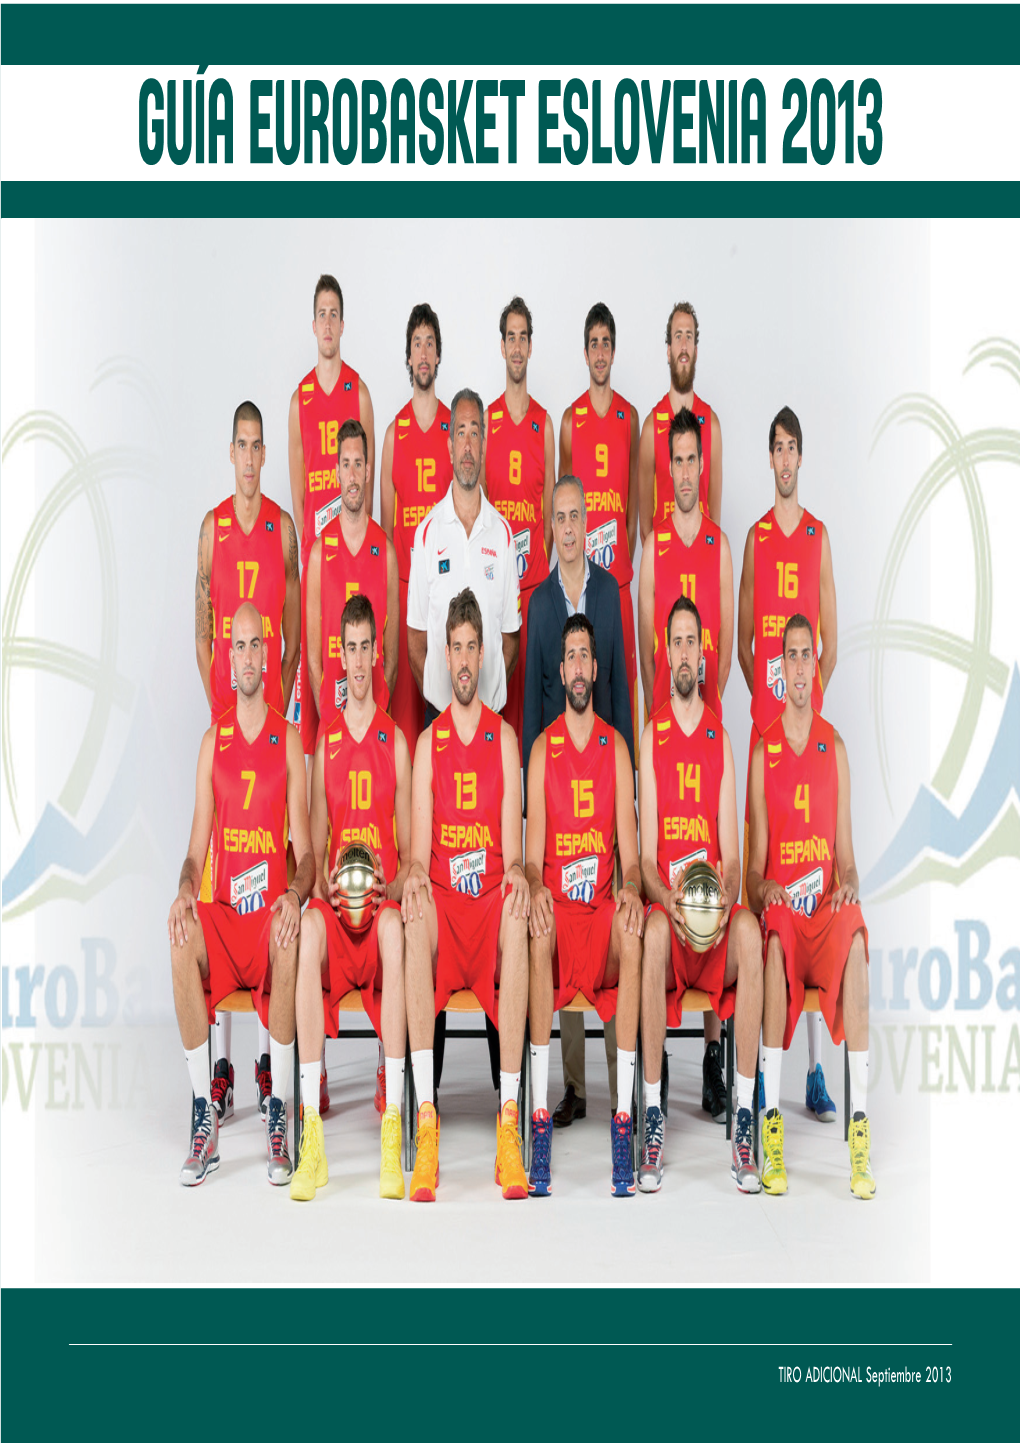 Guía Eurobasket Eslovenia 2013